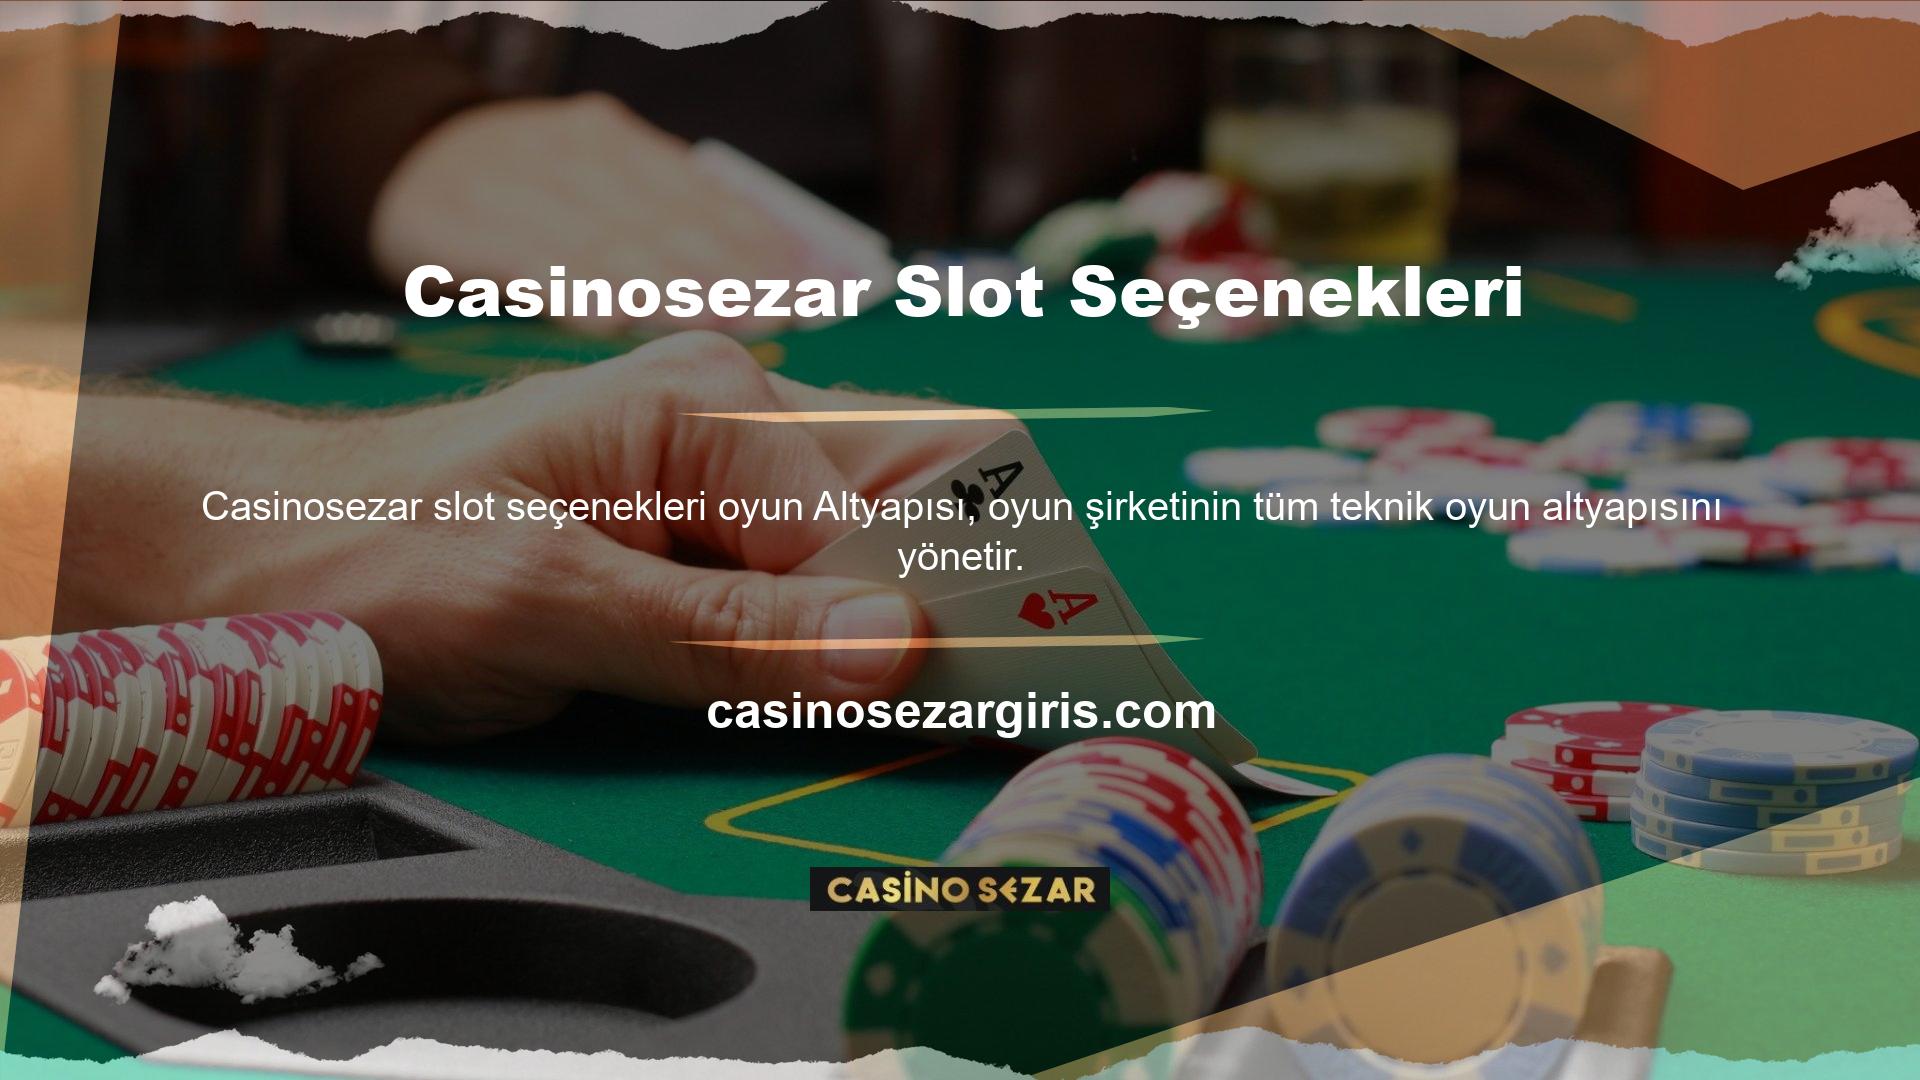 Tüm bahisçiler Casinosezar casino web sitesi aracılığıyla kaliteli casino hizmetleri alabilirler